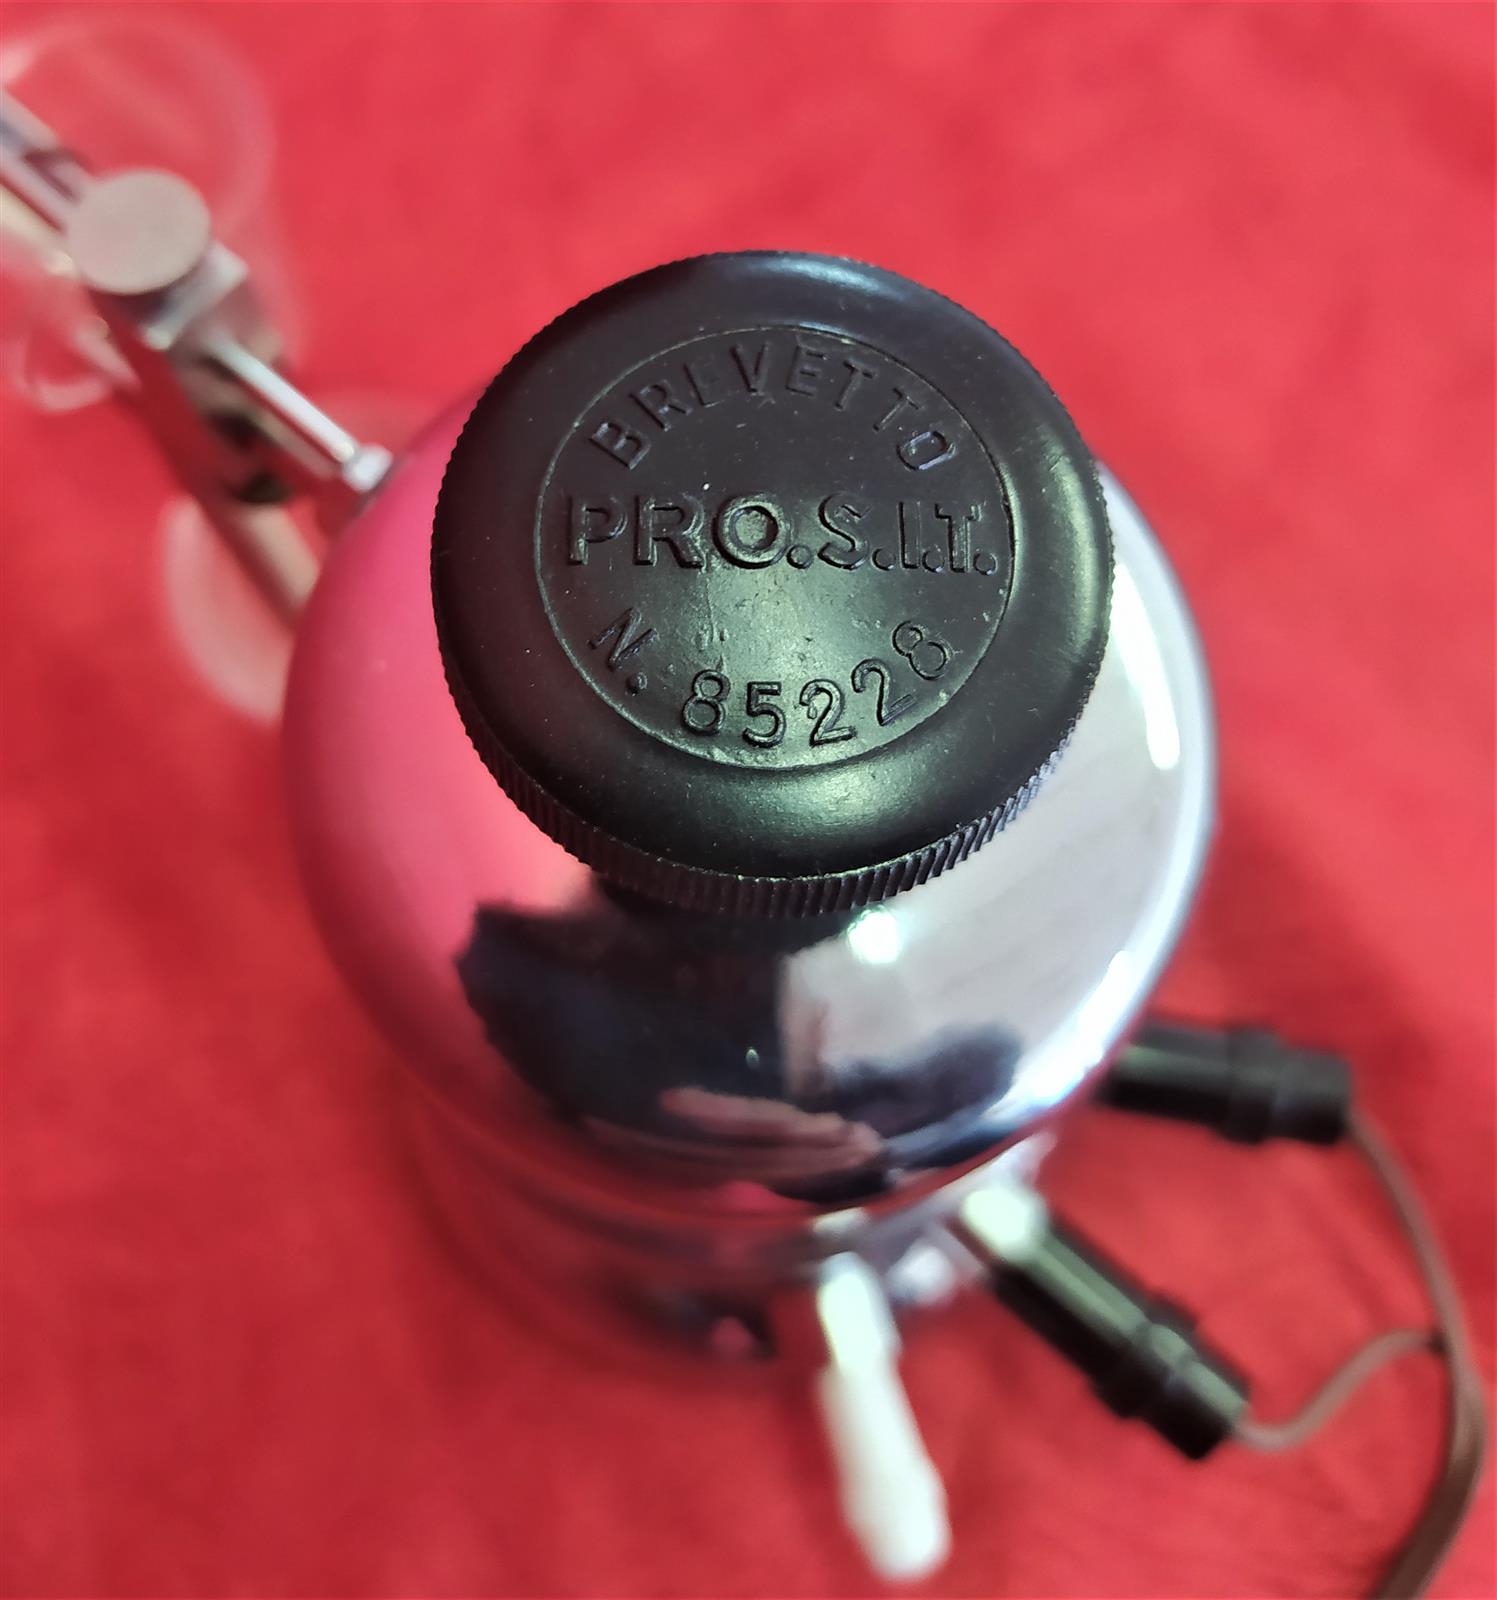 Vintage electric inhaler